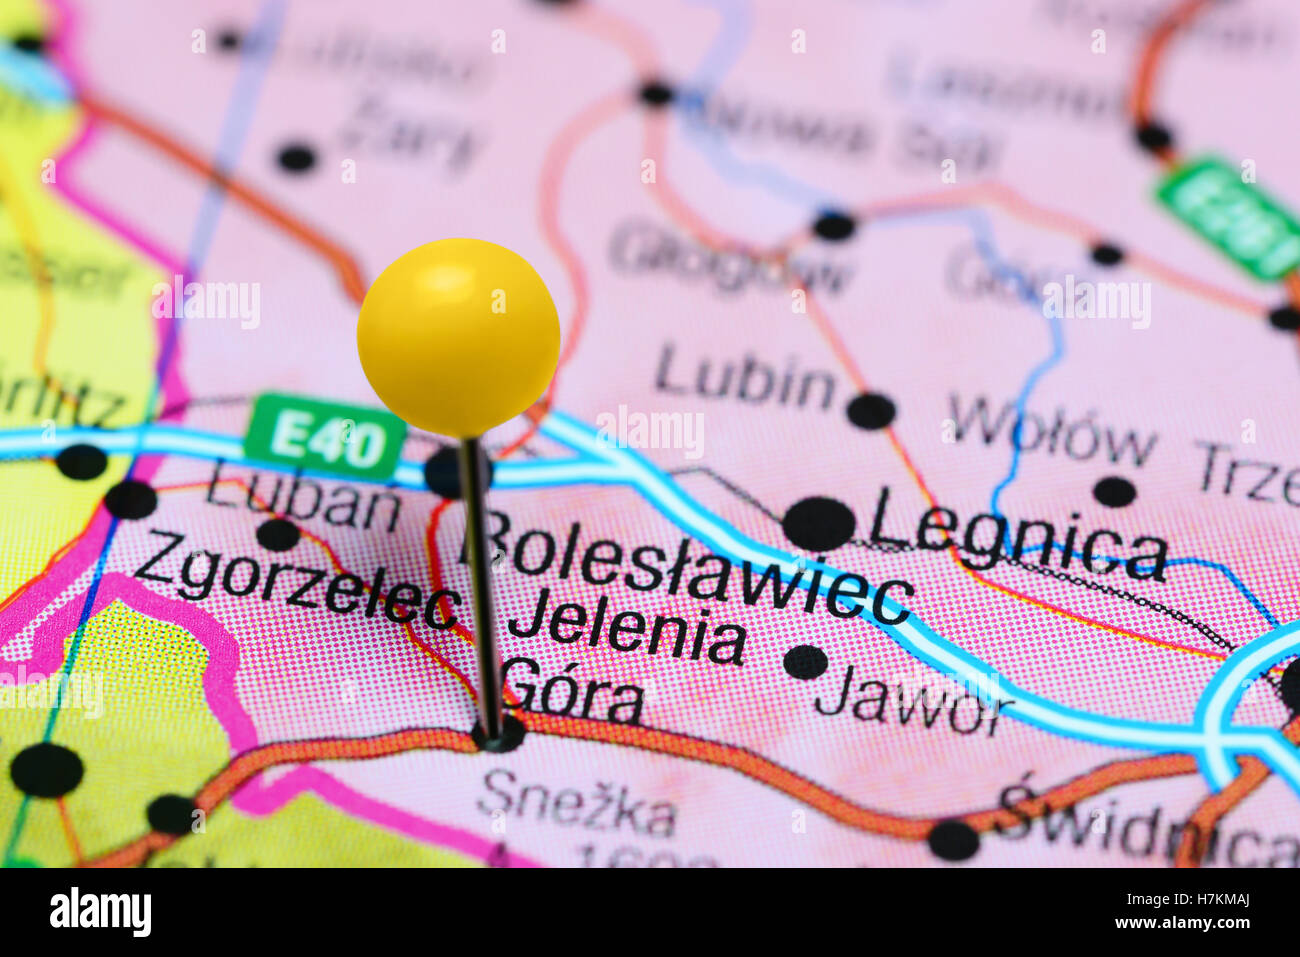 Jelenia Gora pinned on a map of Poland Stock Photo